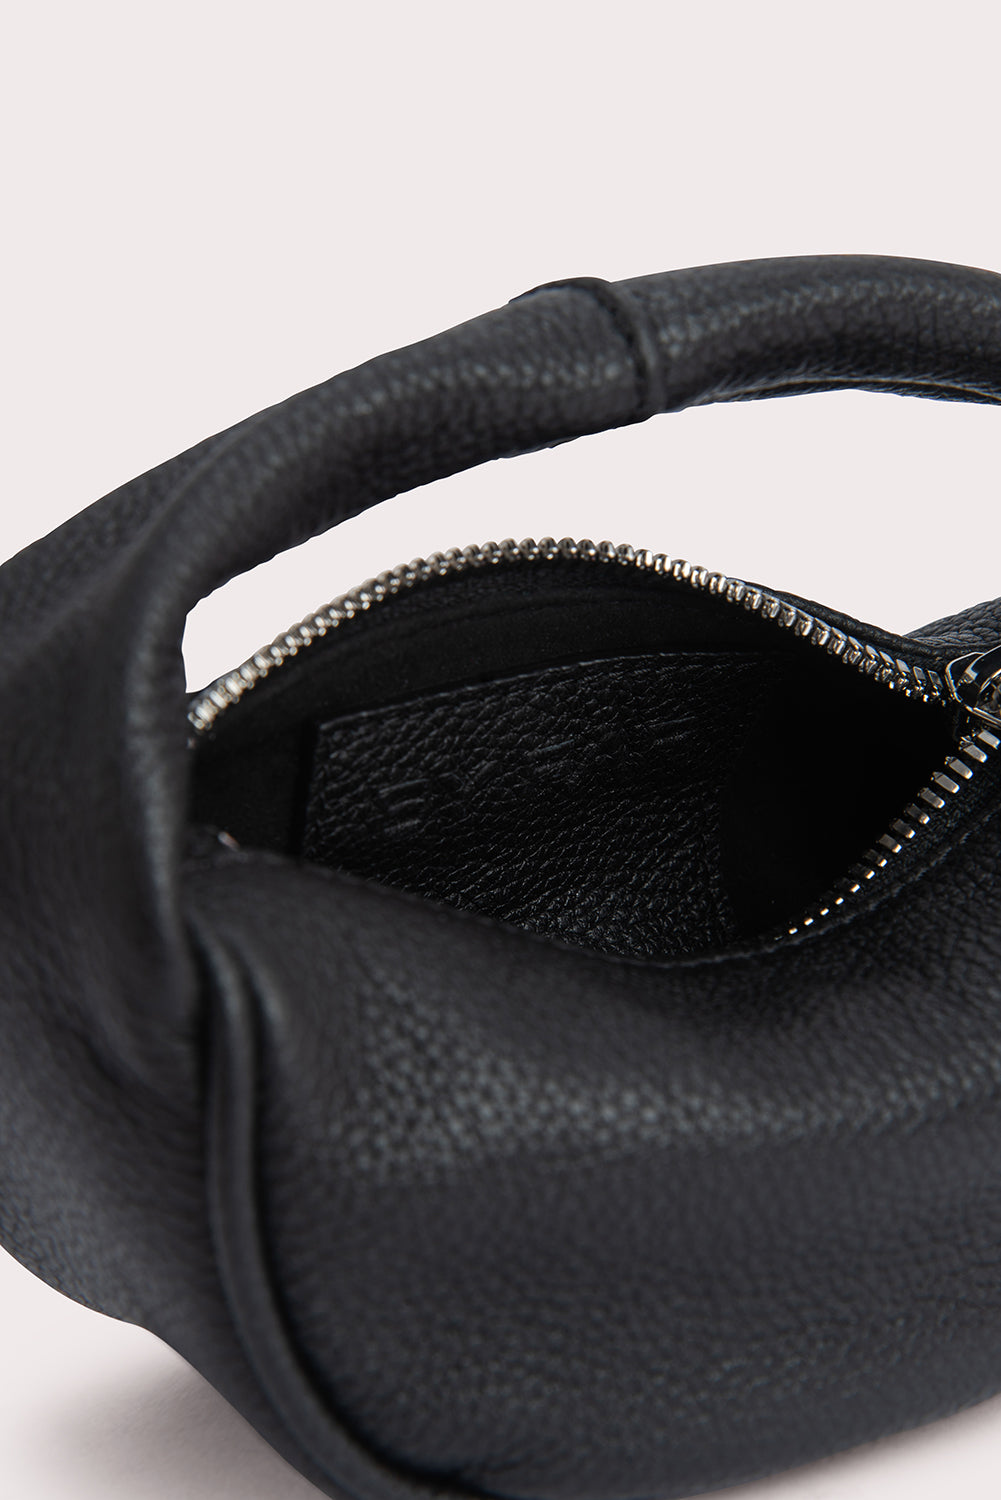 Micro Cush Black BY Calf FAR Leather Small – Grain